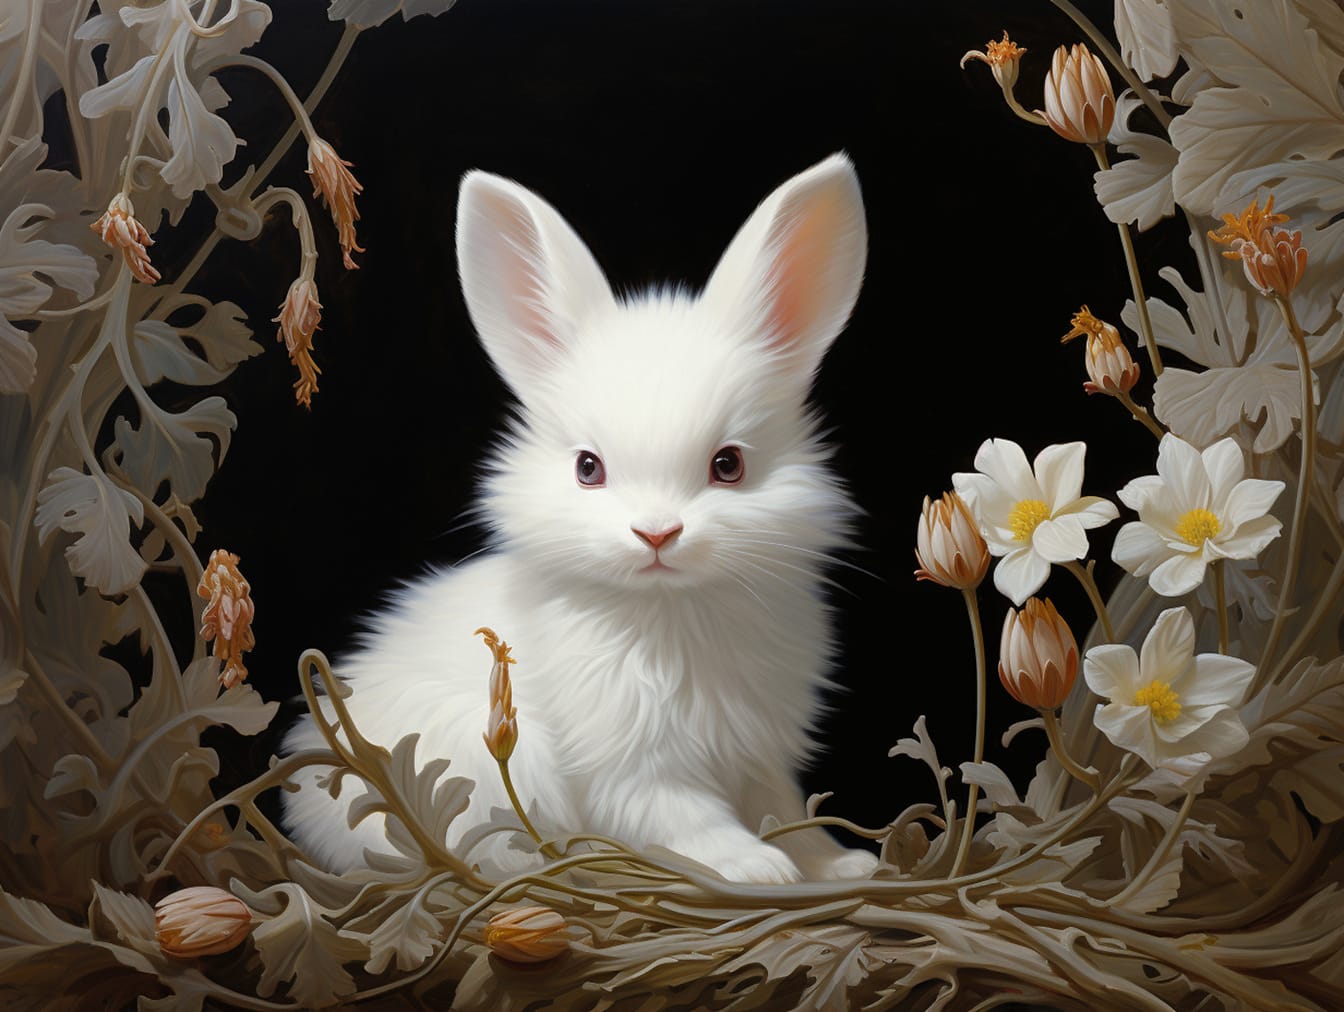 Ilustração de Páscoa do coelho branco encaracolado peludo